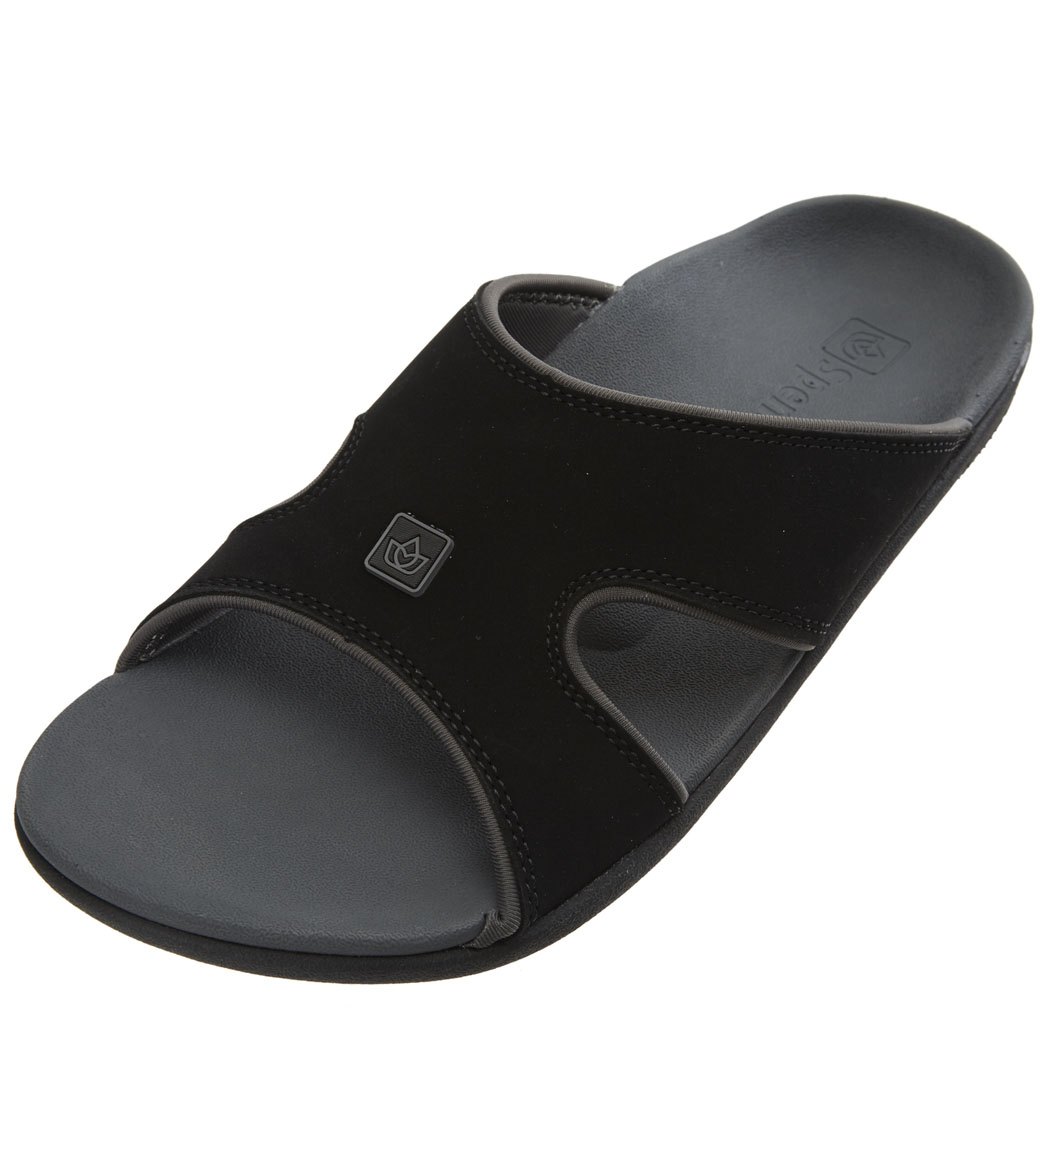 Spenco Men's Kholo Plus Slides Sandals - Carbon/Pewter 7 - Swimoutlet.com